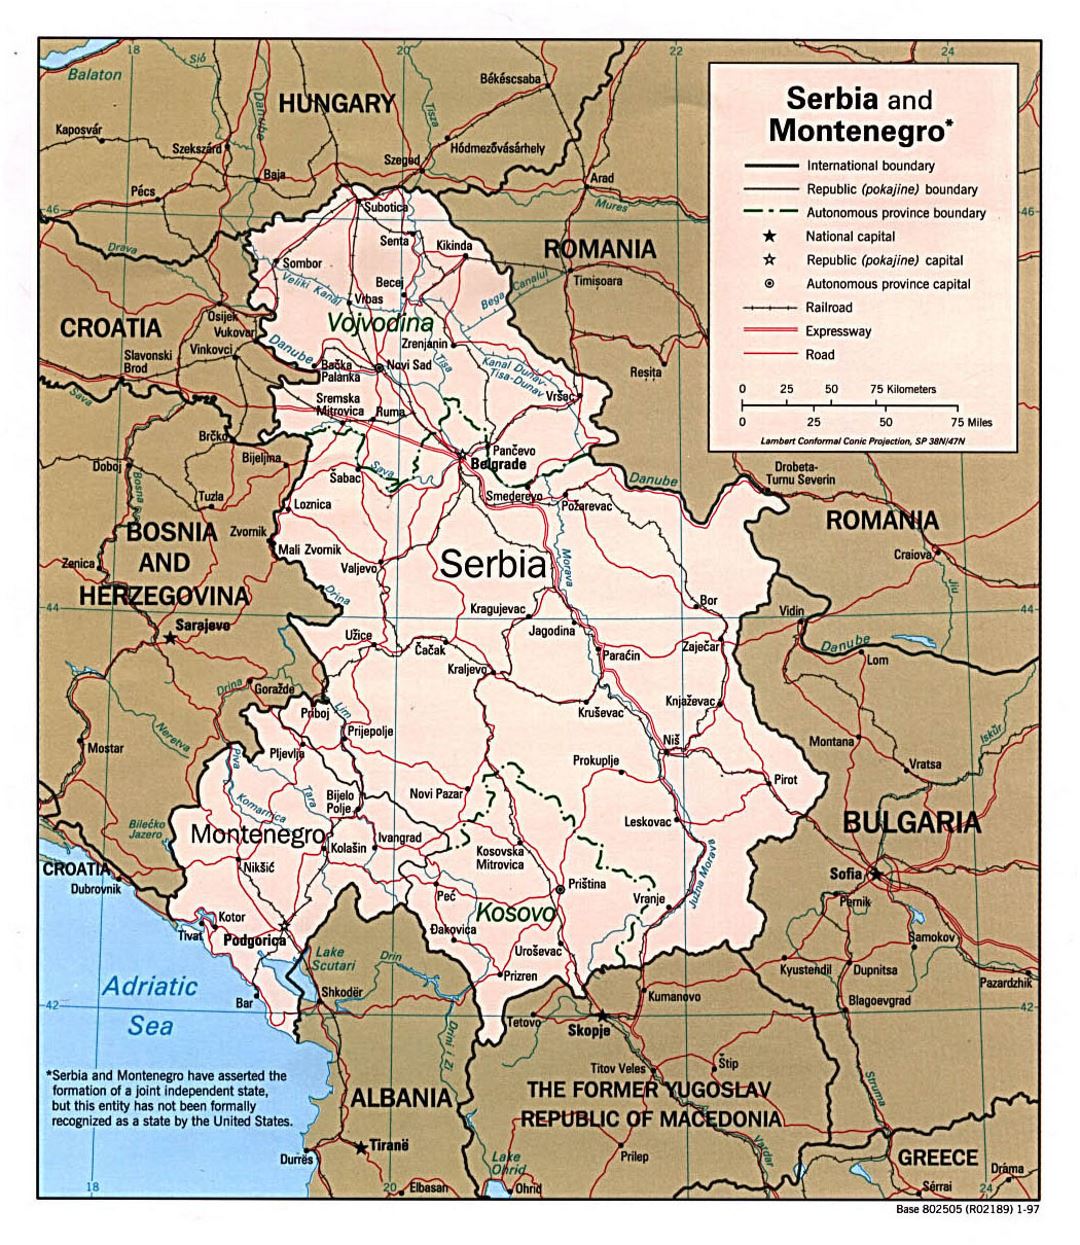 Detallado mapa político de Serbia y Montenegro con carreteras, ferrocarriles y principales ciudades - 1997